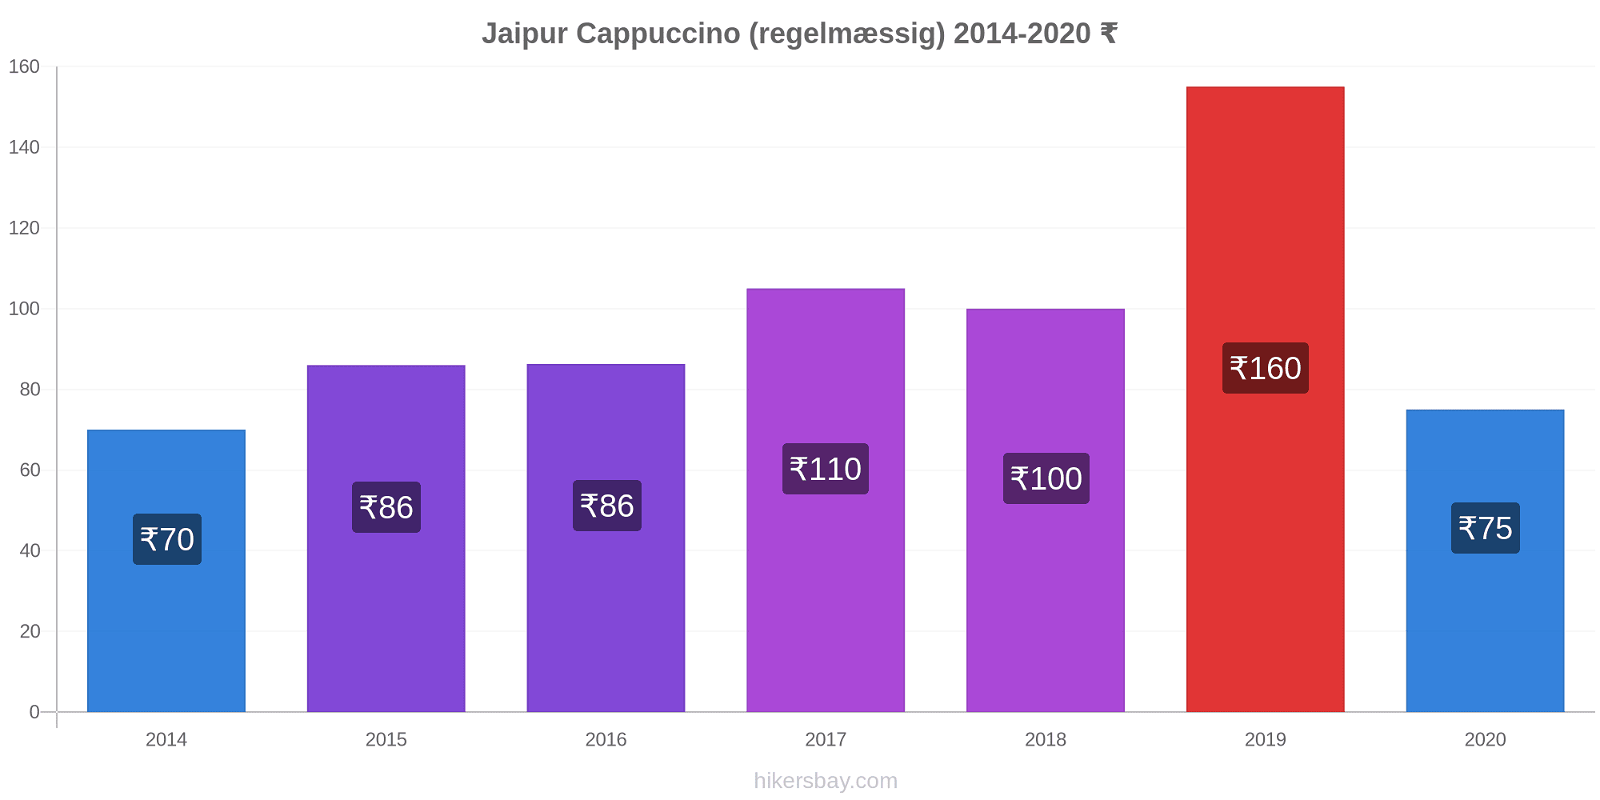 Jaipur prisændringer Cappuccino (regelmæssig) hikersbay.com